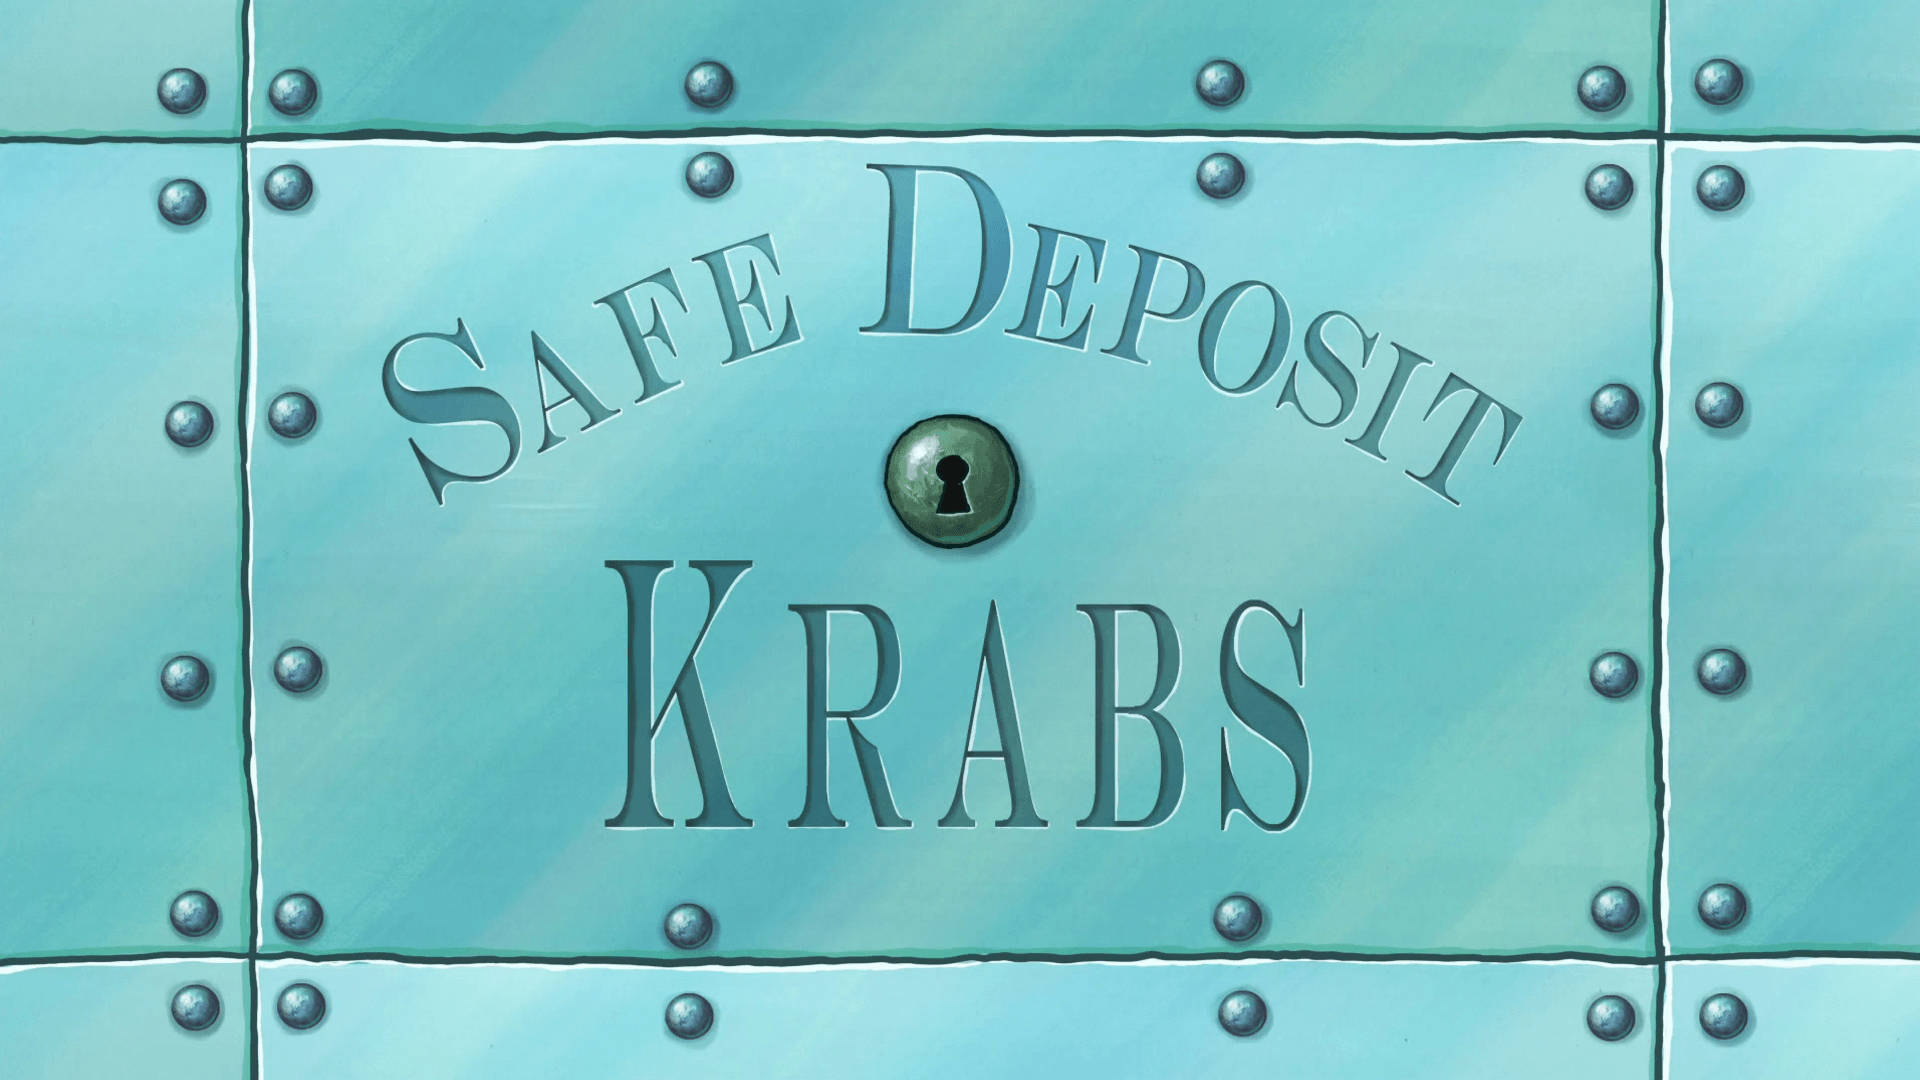 Mr. Krabs' Safe Deposit Background